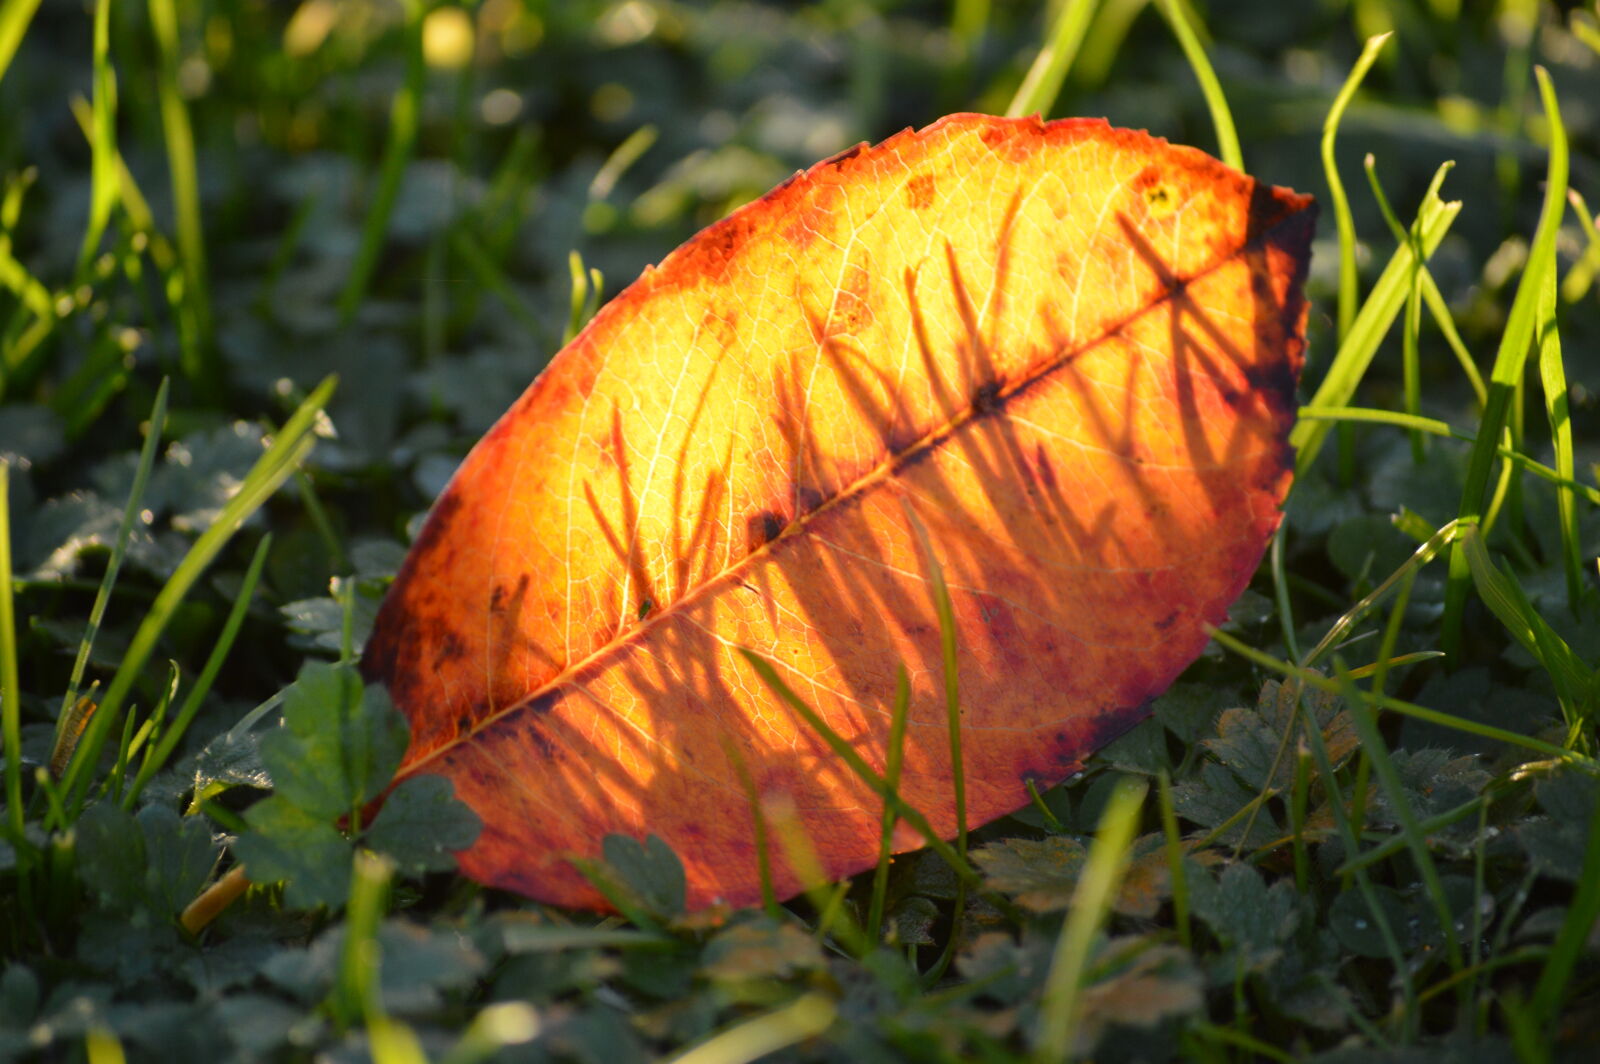 Nikon D3200 + Nikon AF-S DX Nikkor 55-200mm F4-5.6G VR sample photo. Autumn, leaf, fall, foliage photography